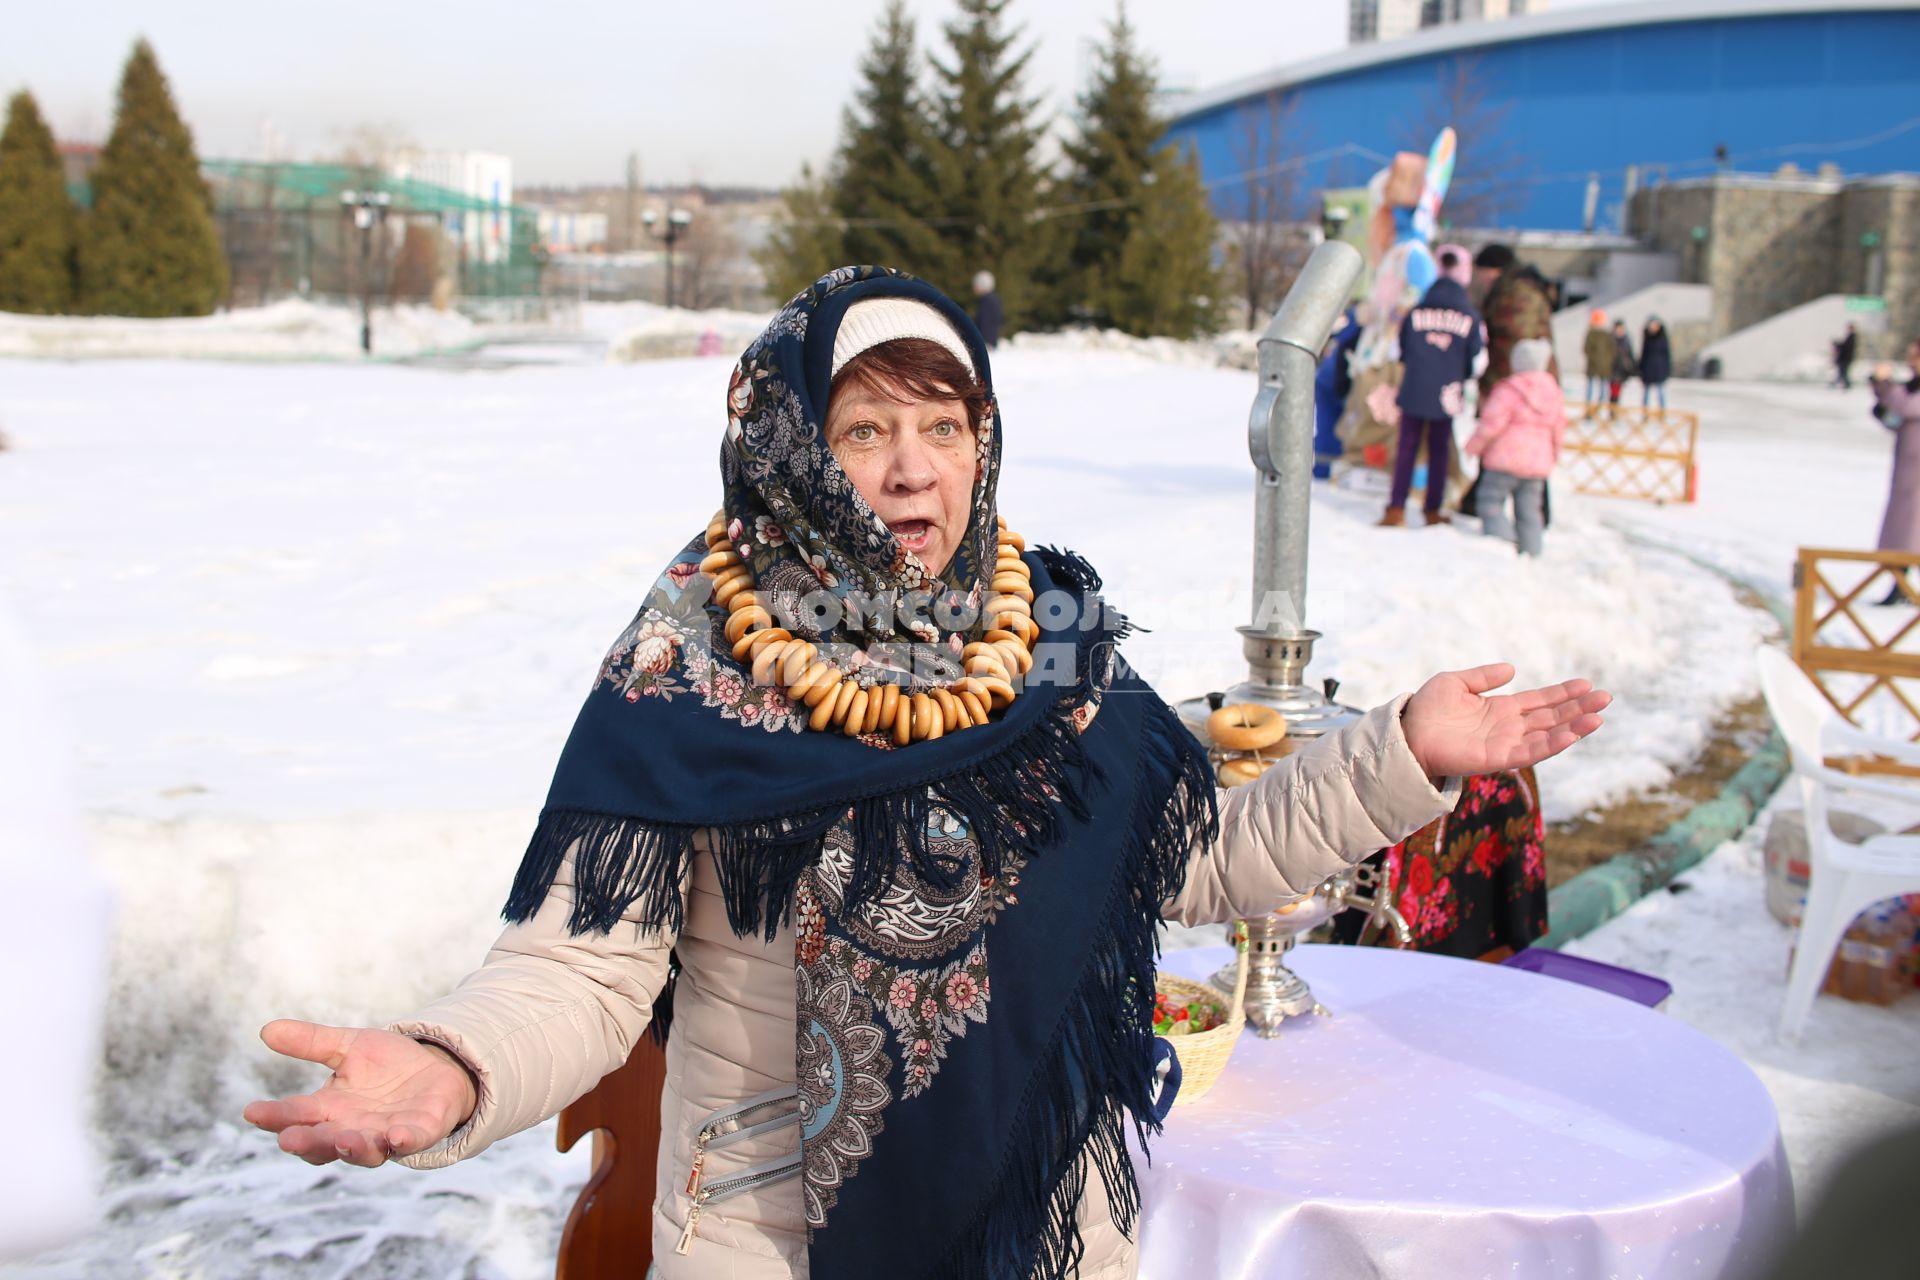 Челябинск. Народные забавы  во время празднования Широкой Масленицы.